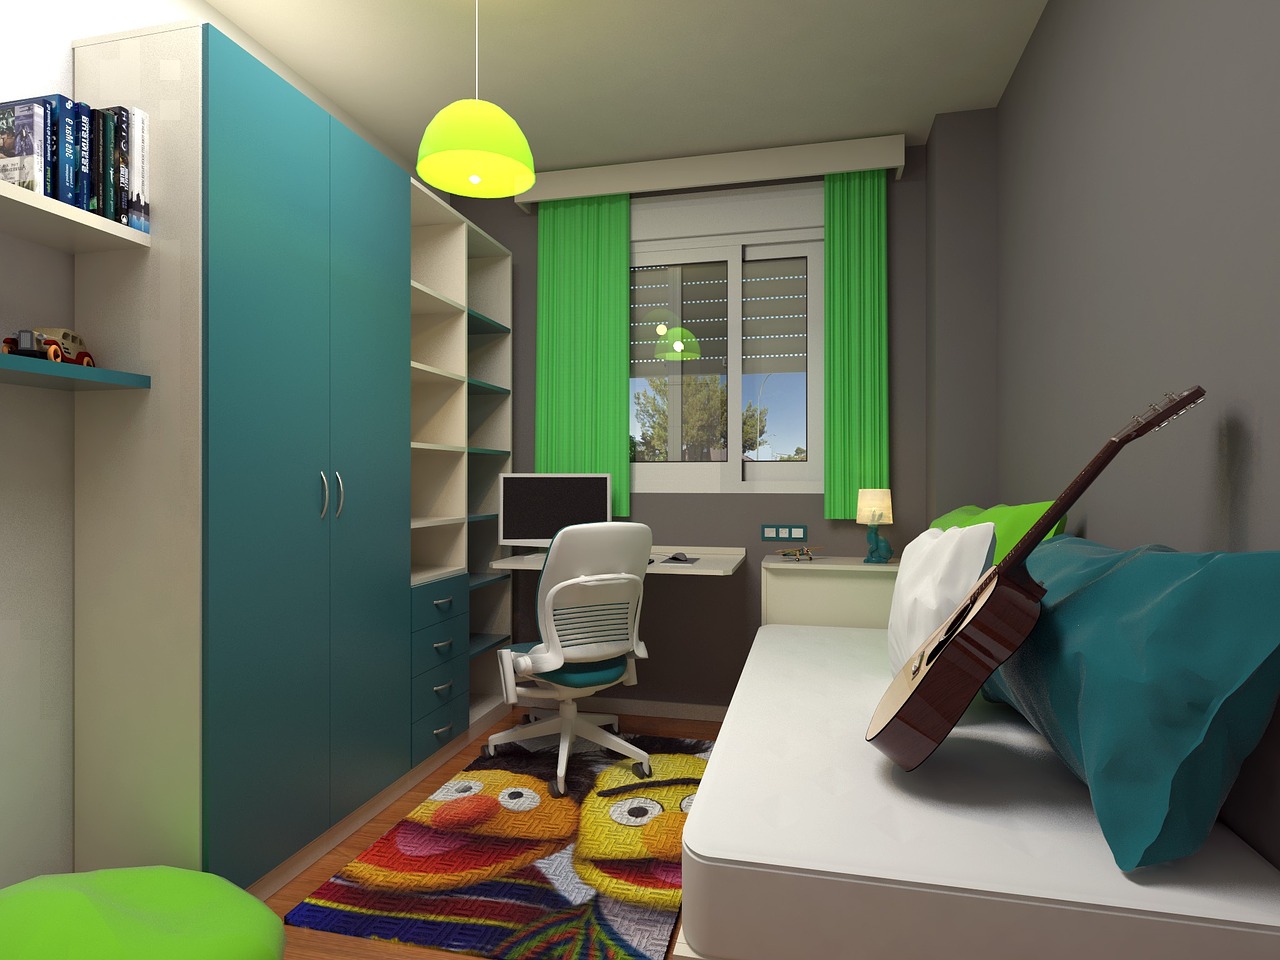 Kreatywne Przechowywanie: Jak Zoptymalizować Przestrzeń w Małym Mieszkaniu